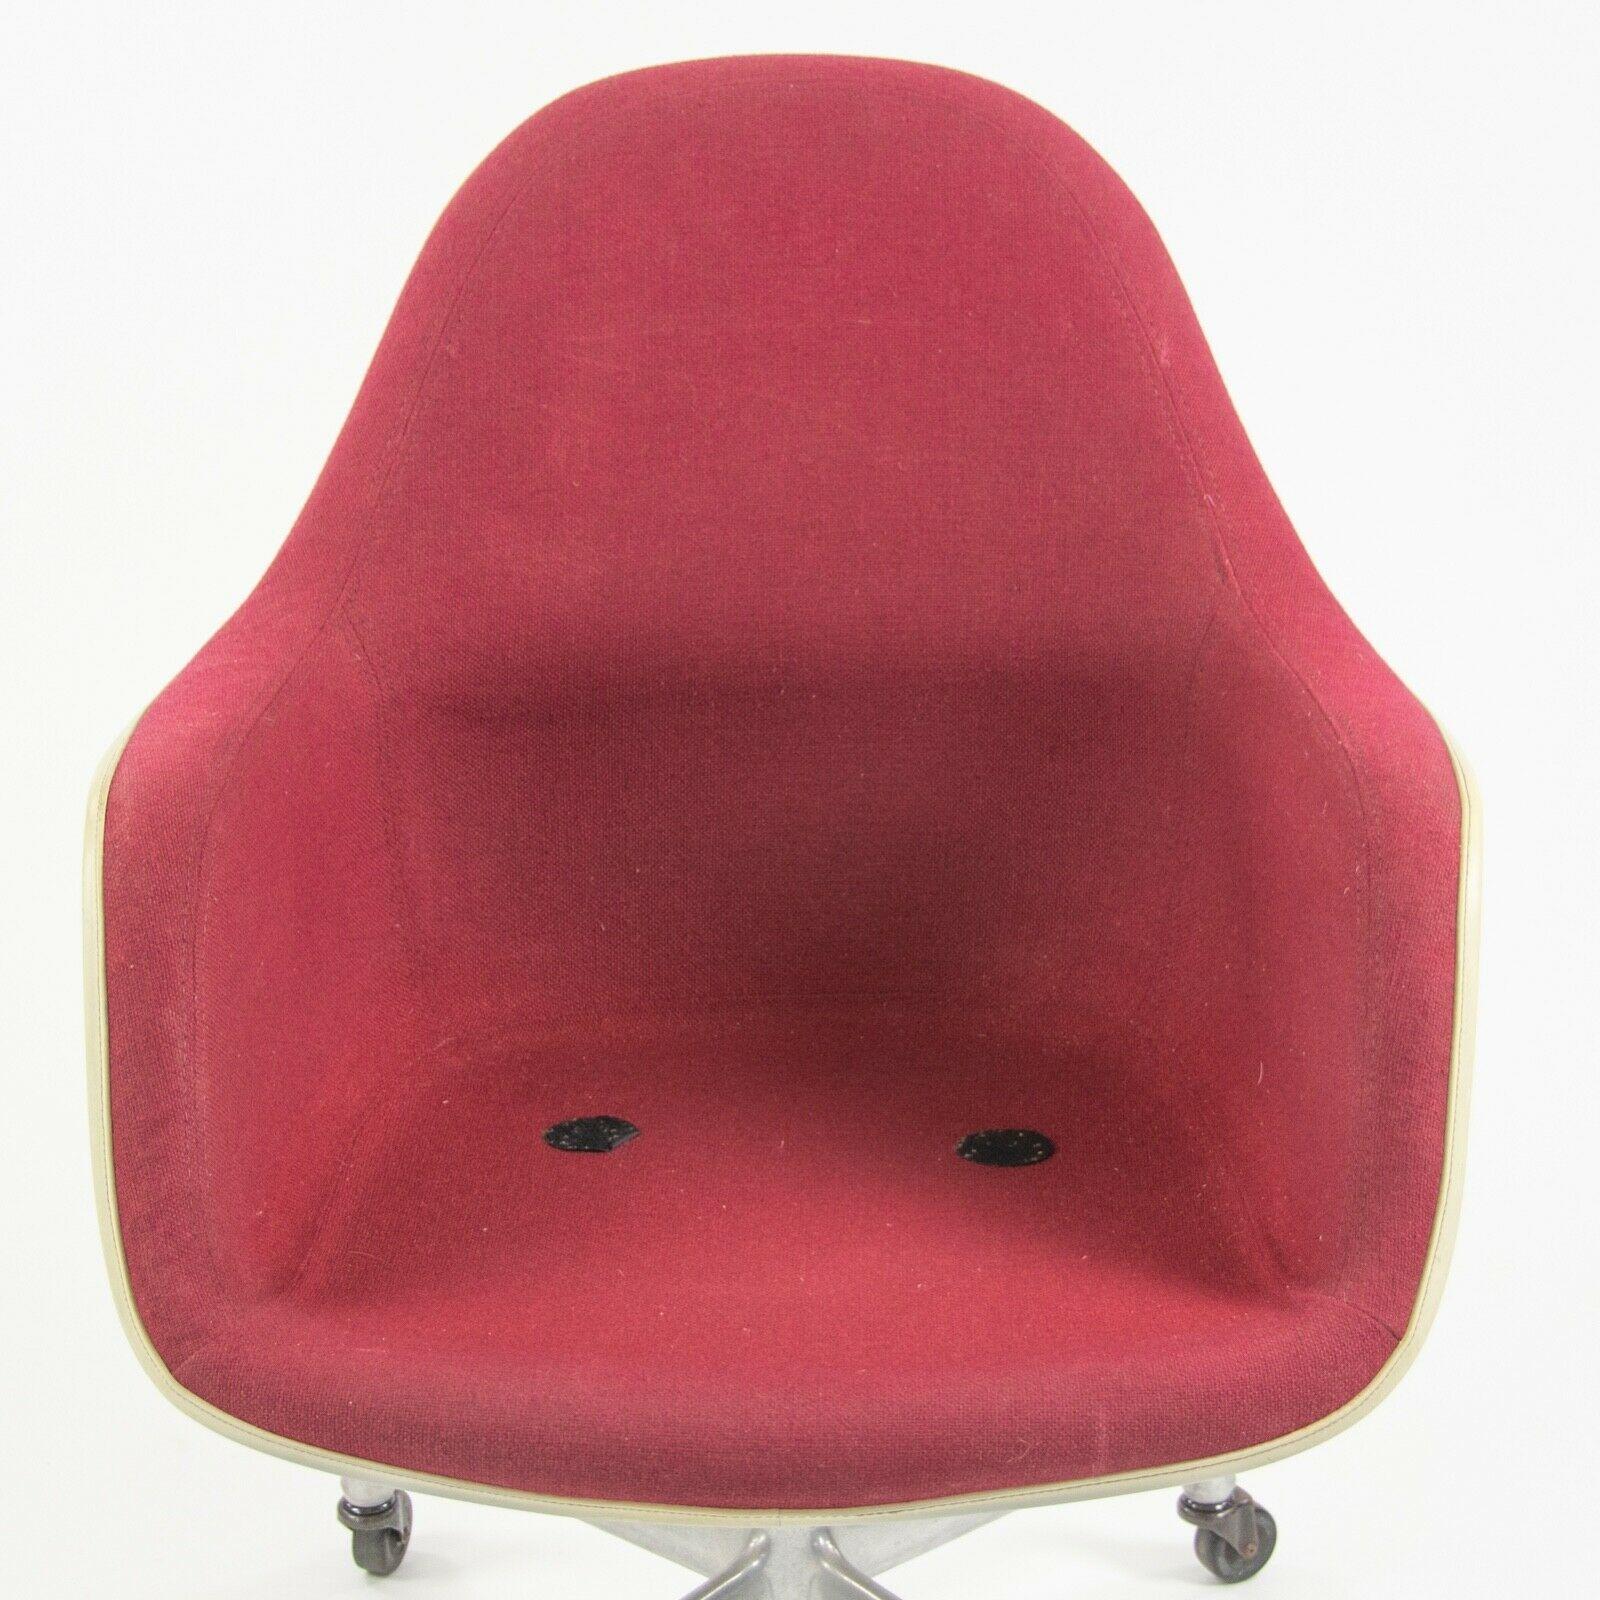 1977 Eames Herman Miller EC175 Upholstered Fiberglass Shell Chair For Sale 3